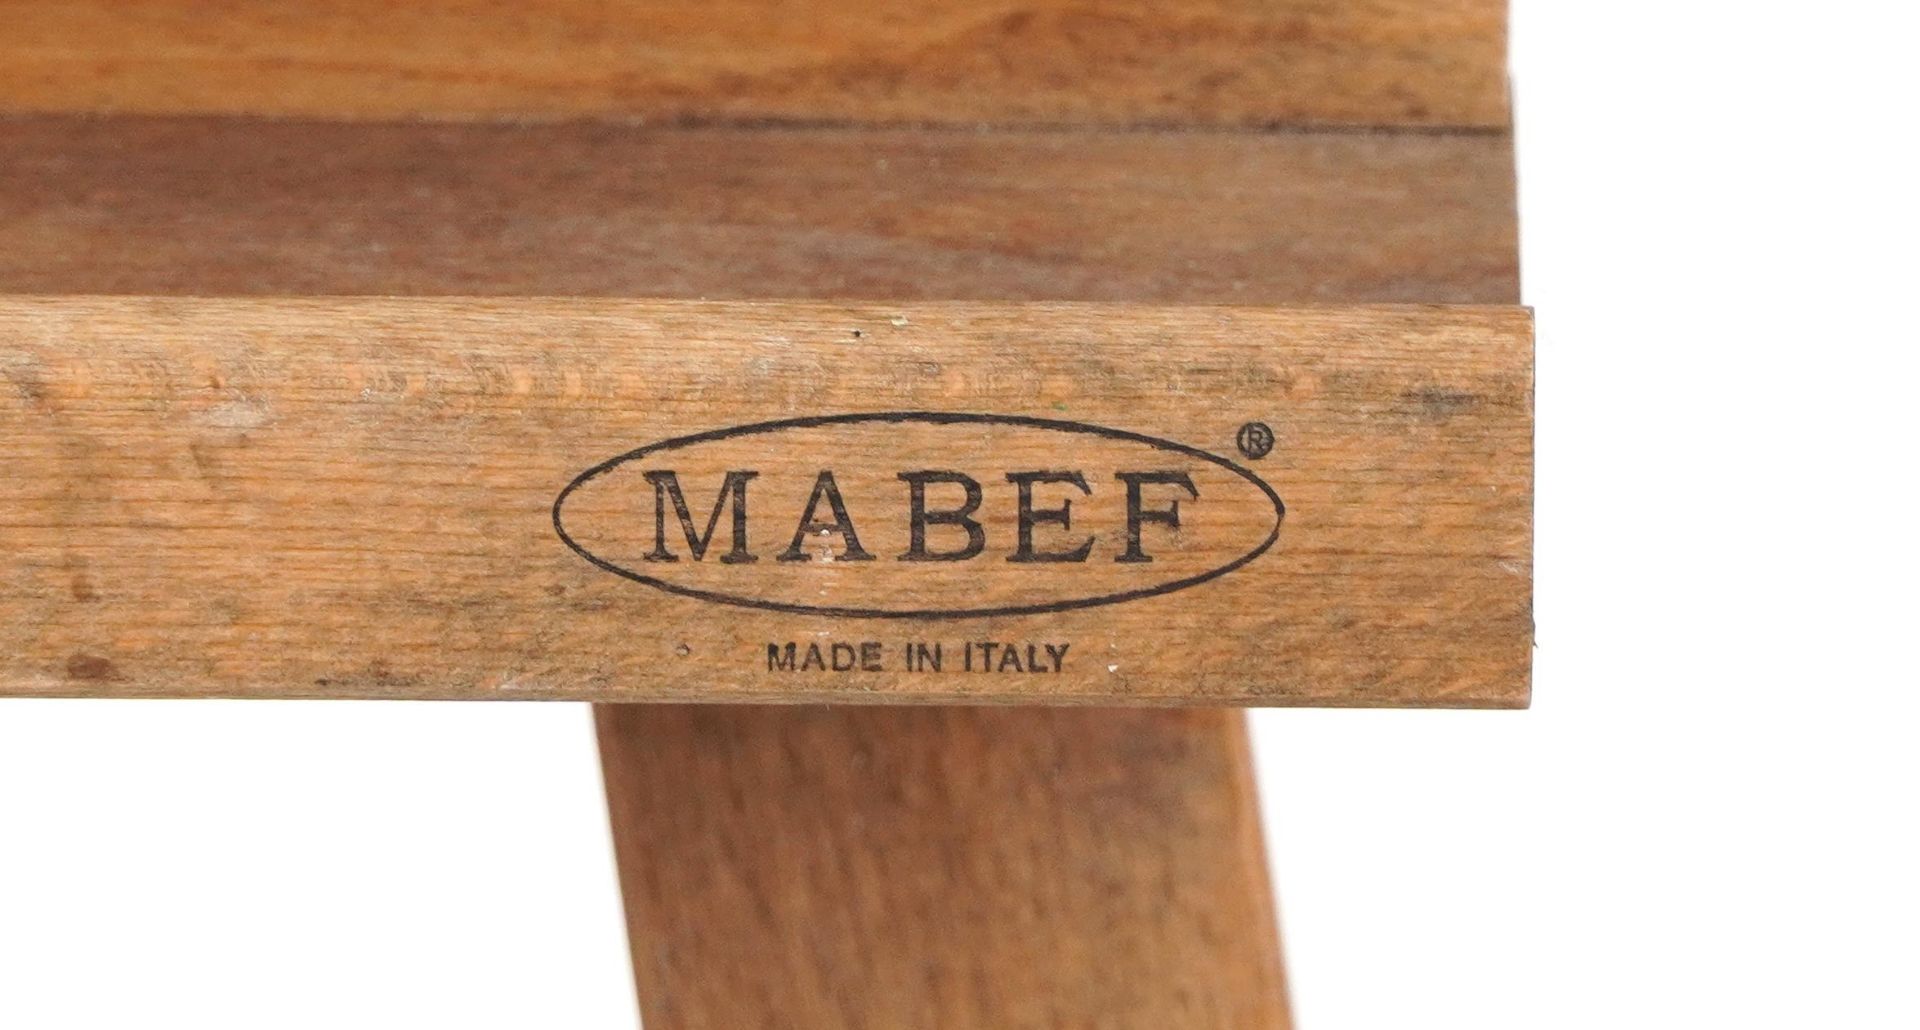 Vintage Mabef lightwood floor standing artist's easel, 188cm high - Image 3 of 4